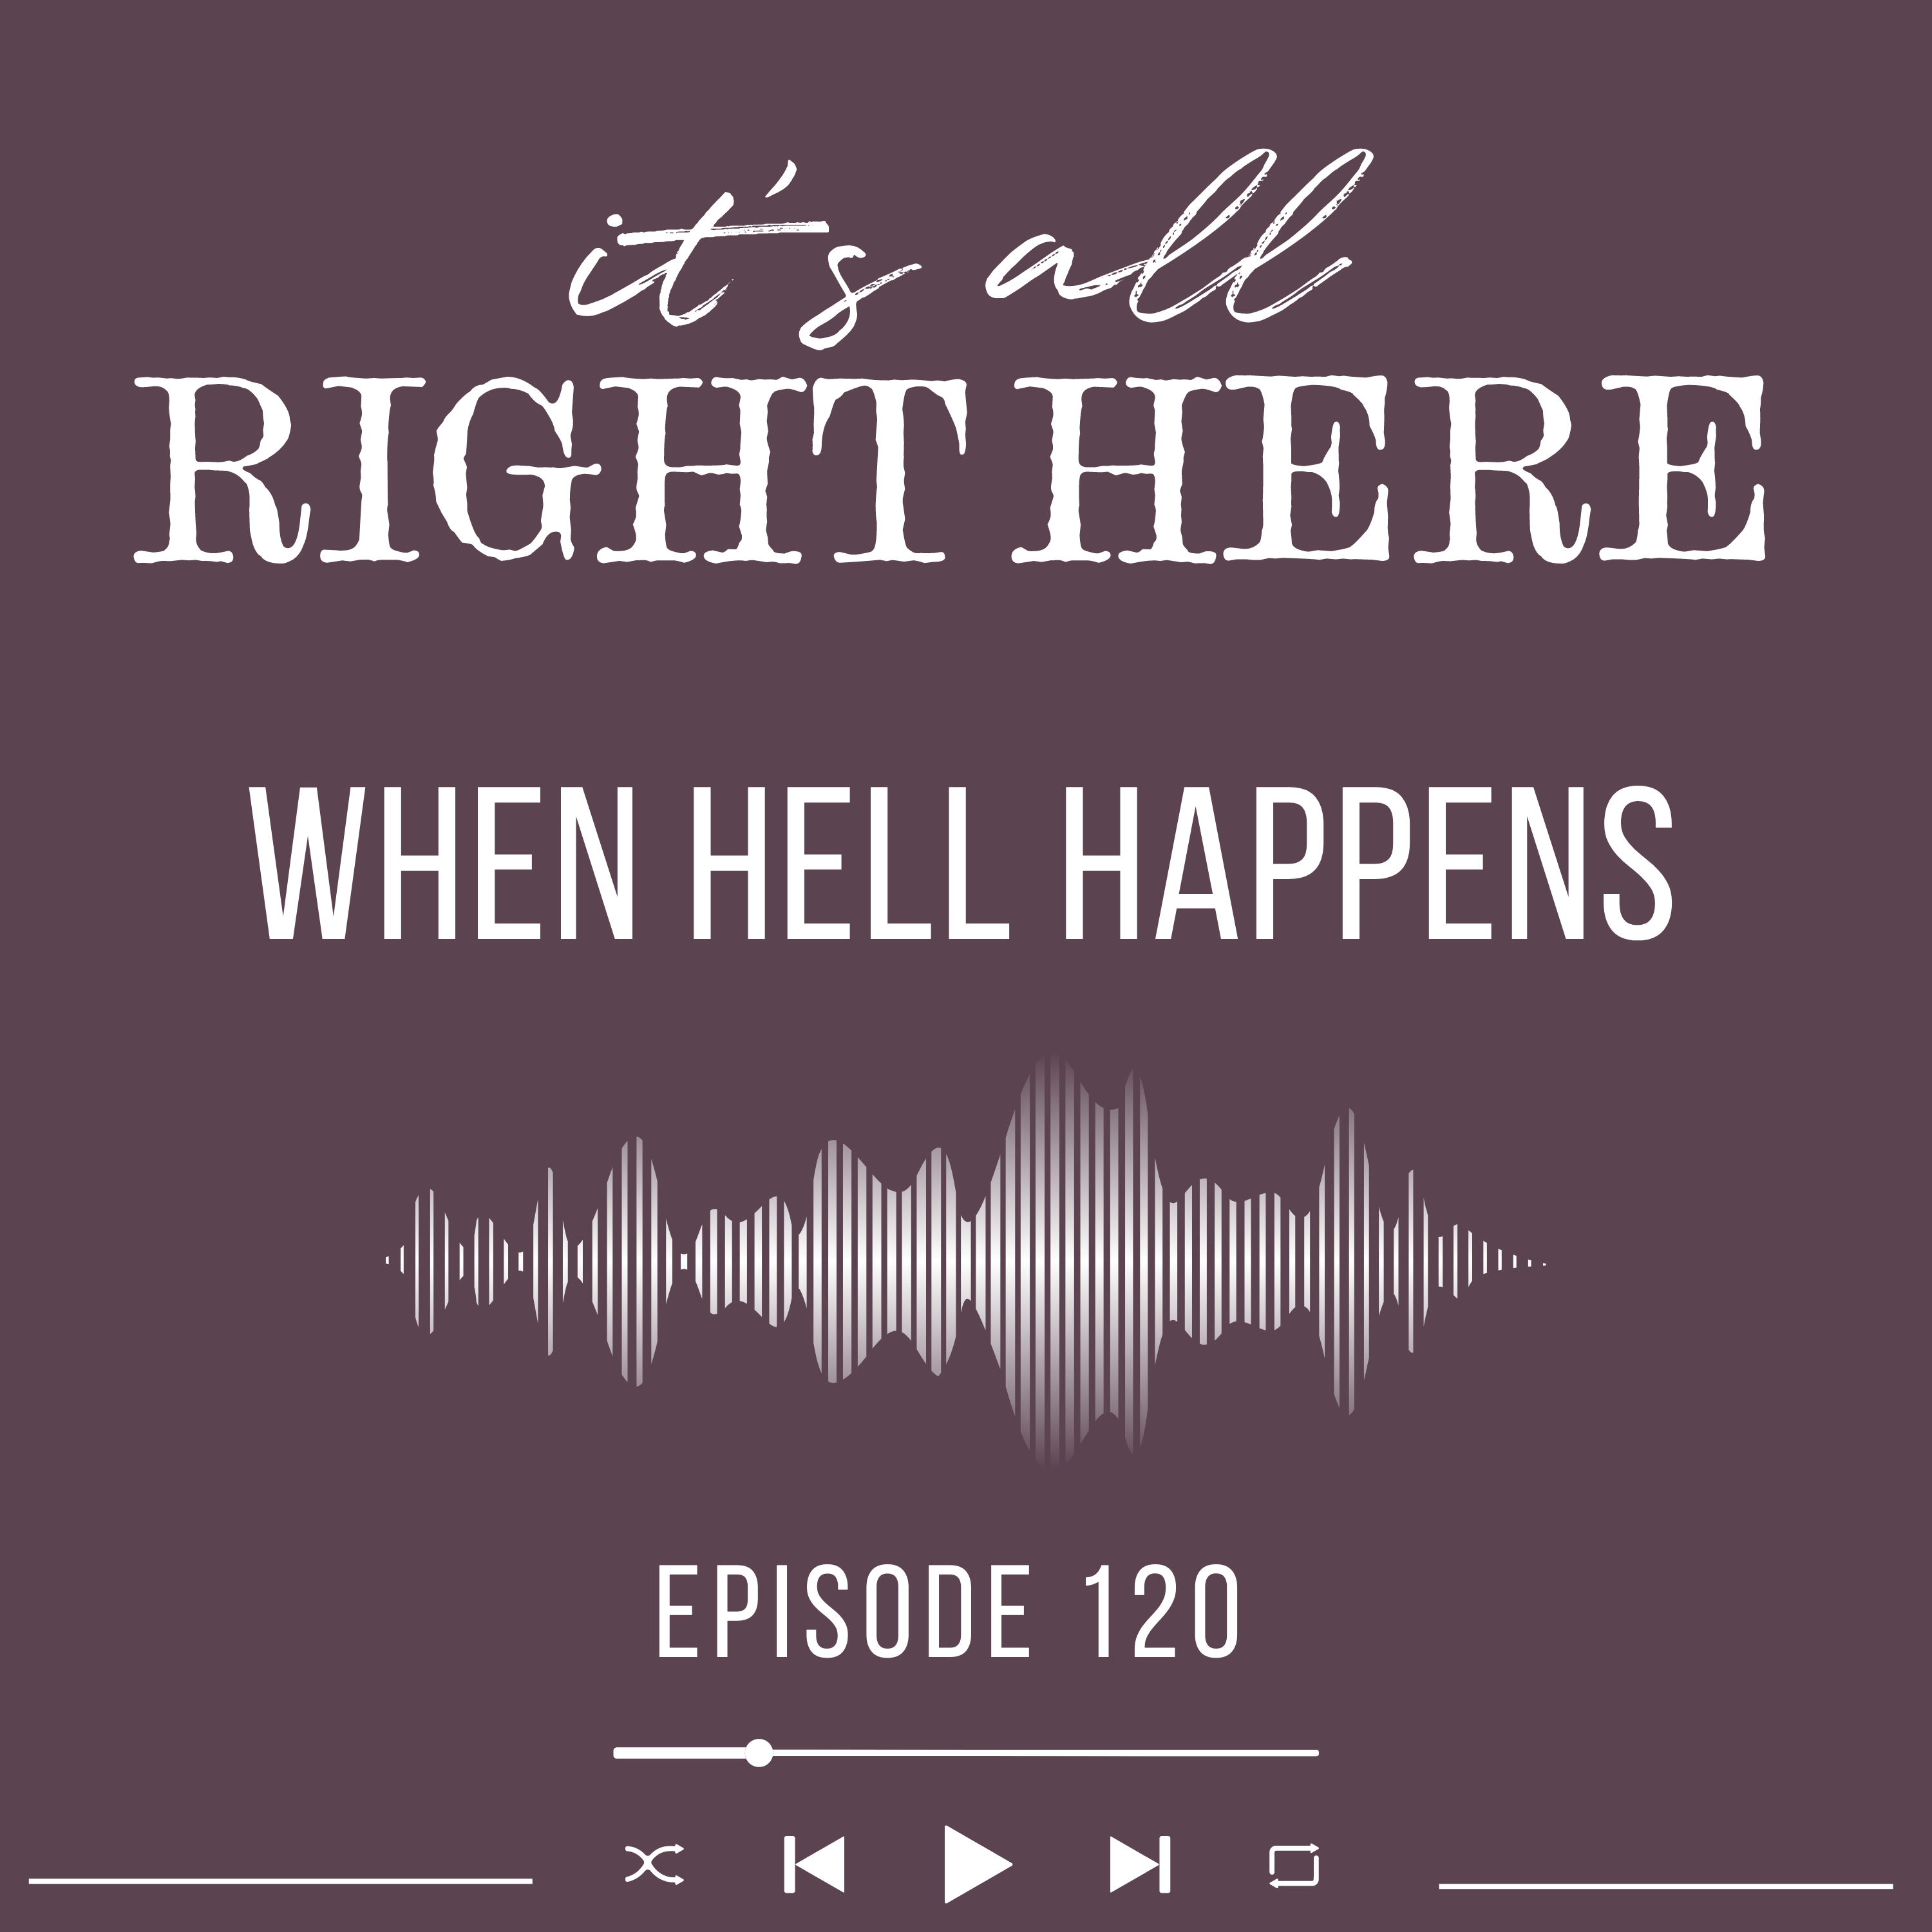 When Hell Heappens : Episode 120 Britt B Steele